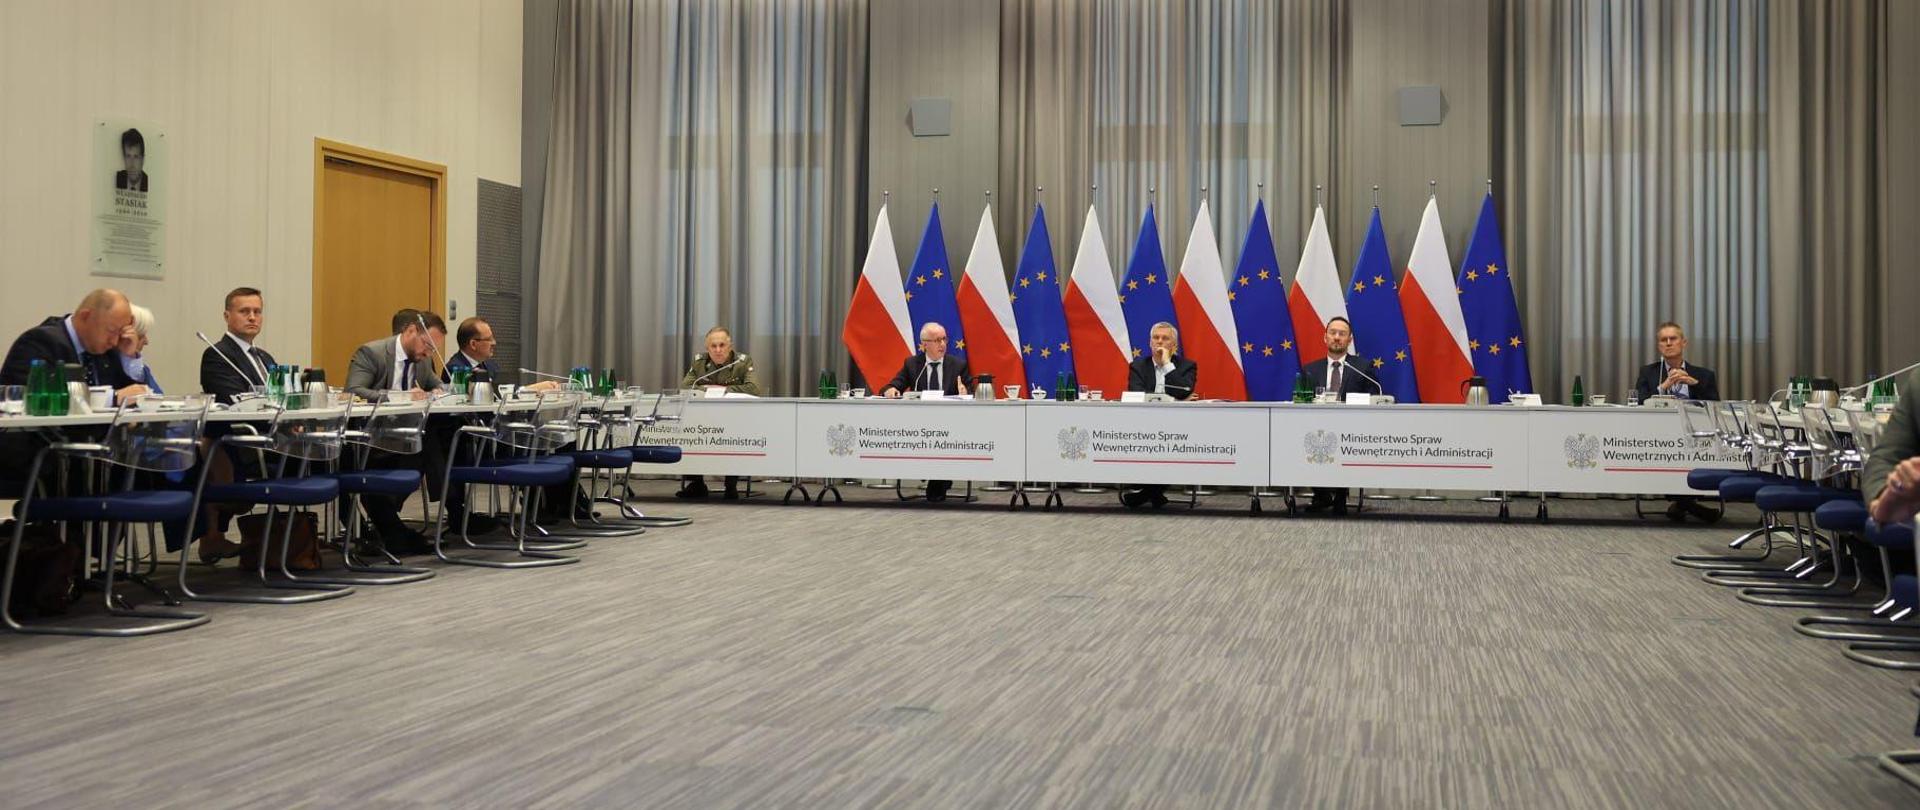 Ministrowie siedzą przy środkowym stole. Wojewodowie siedzą przy stołach po lewej i prawej stronie. Za ministrami widać flagi Polski i Unii Europejskiej, każdej jest po 6.